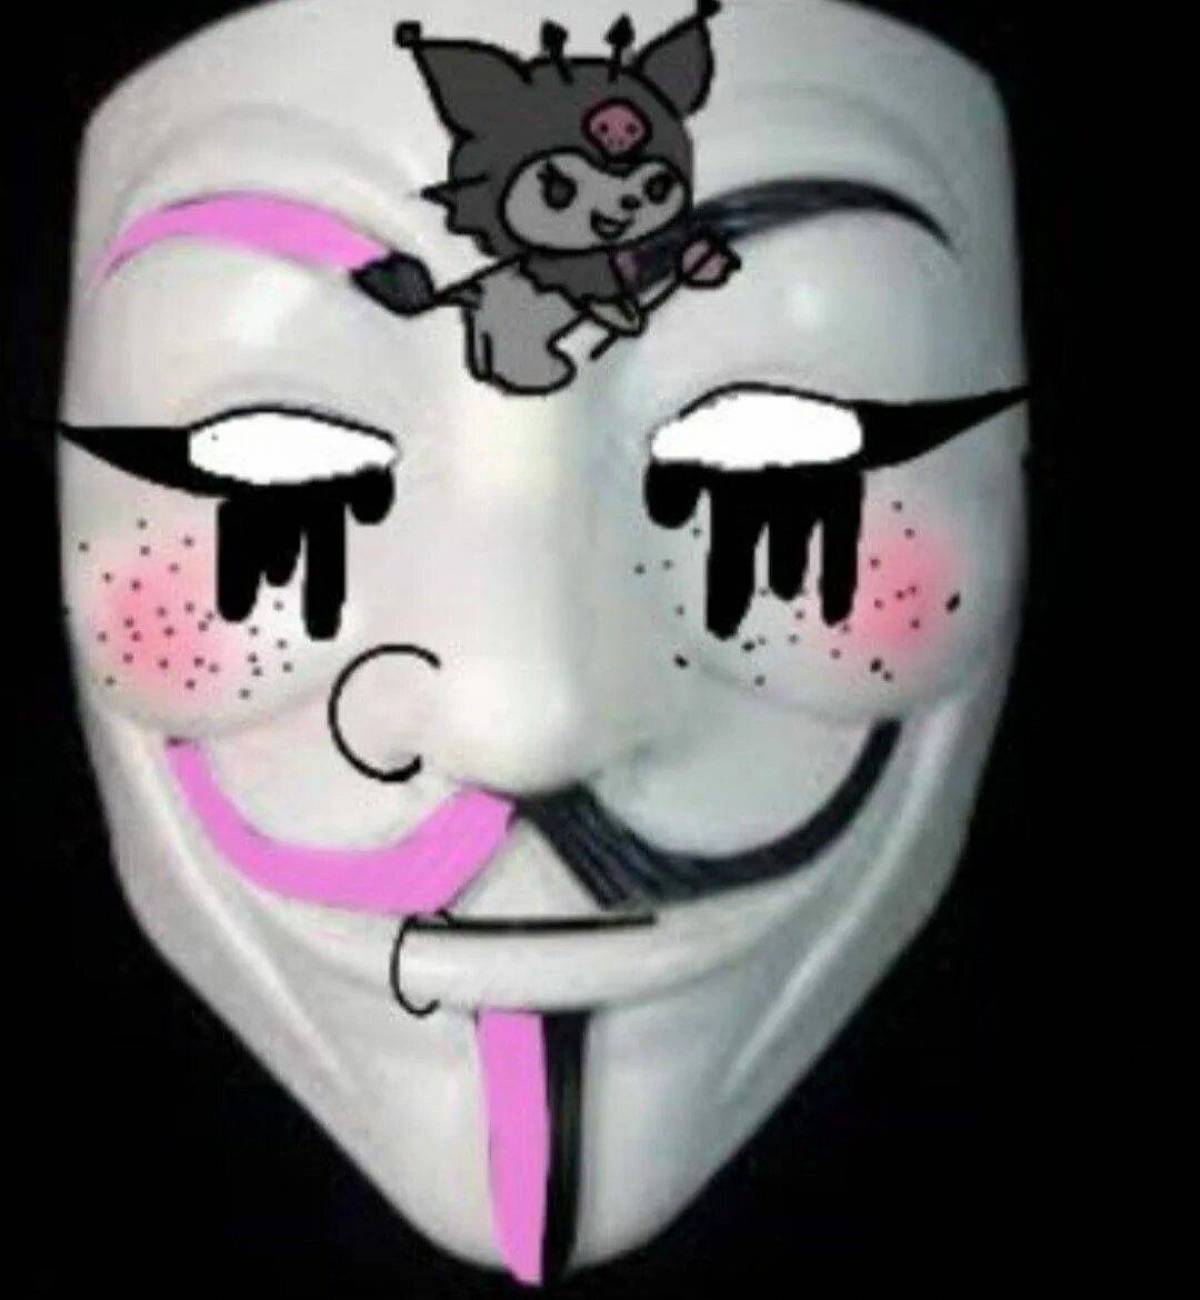 Квадобрика. Идеи для маски Анонимуса. Украшения для маски Анонимуса. Раскрашенные маски Анонимуса для девочек. Идеи для масок анонимусов для девочек.